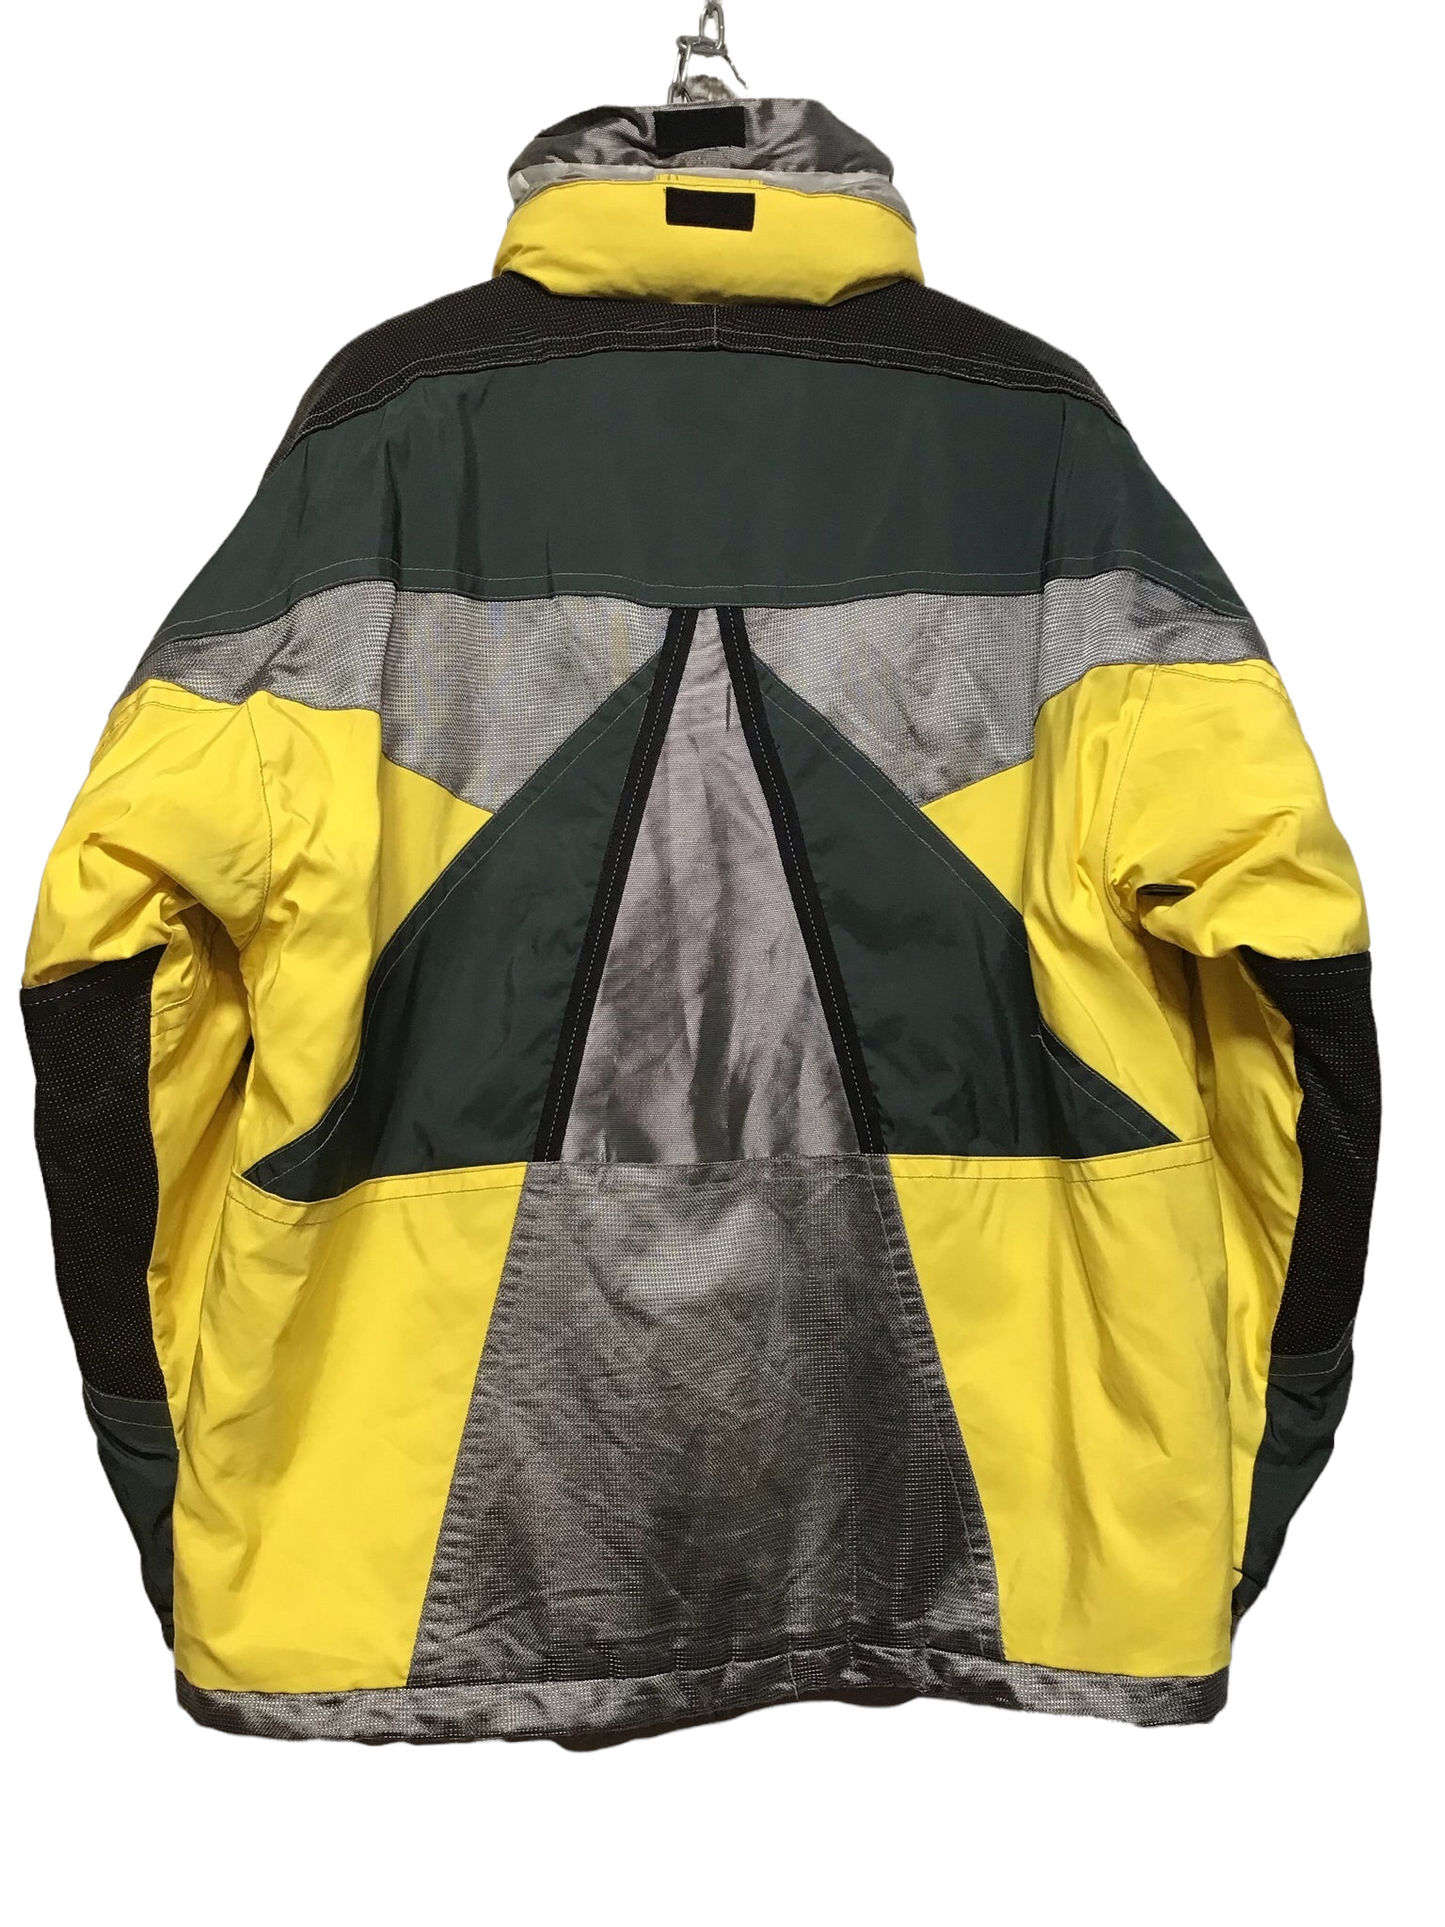 Colmar Yellow Ski Jacket (Size XXL)